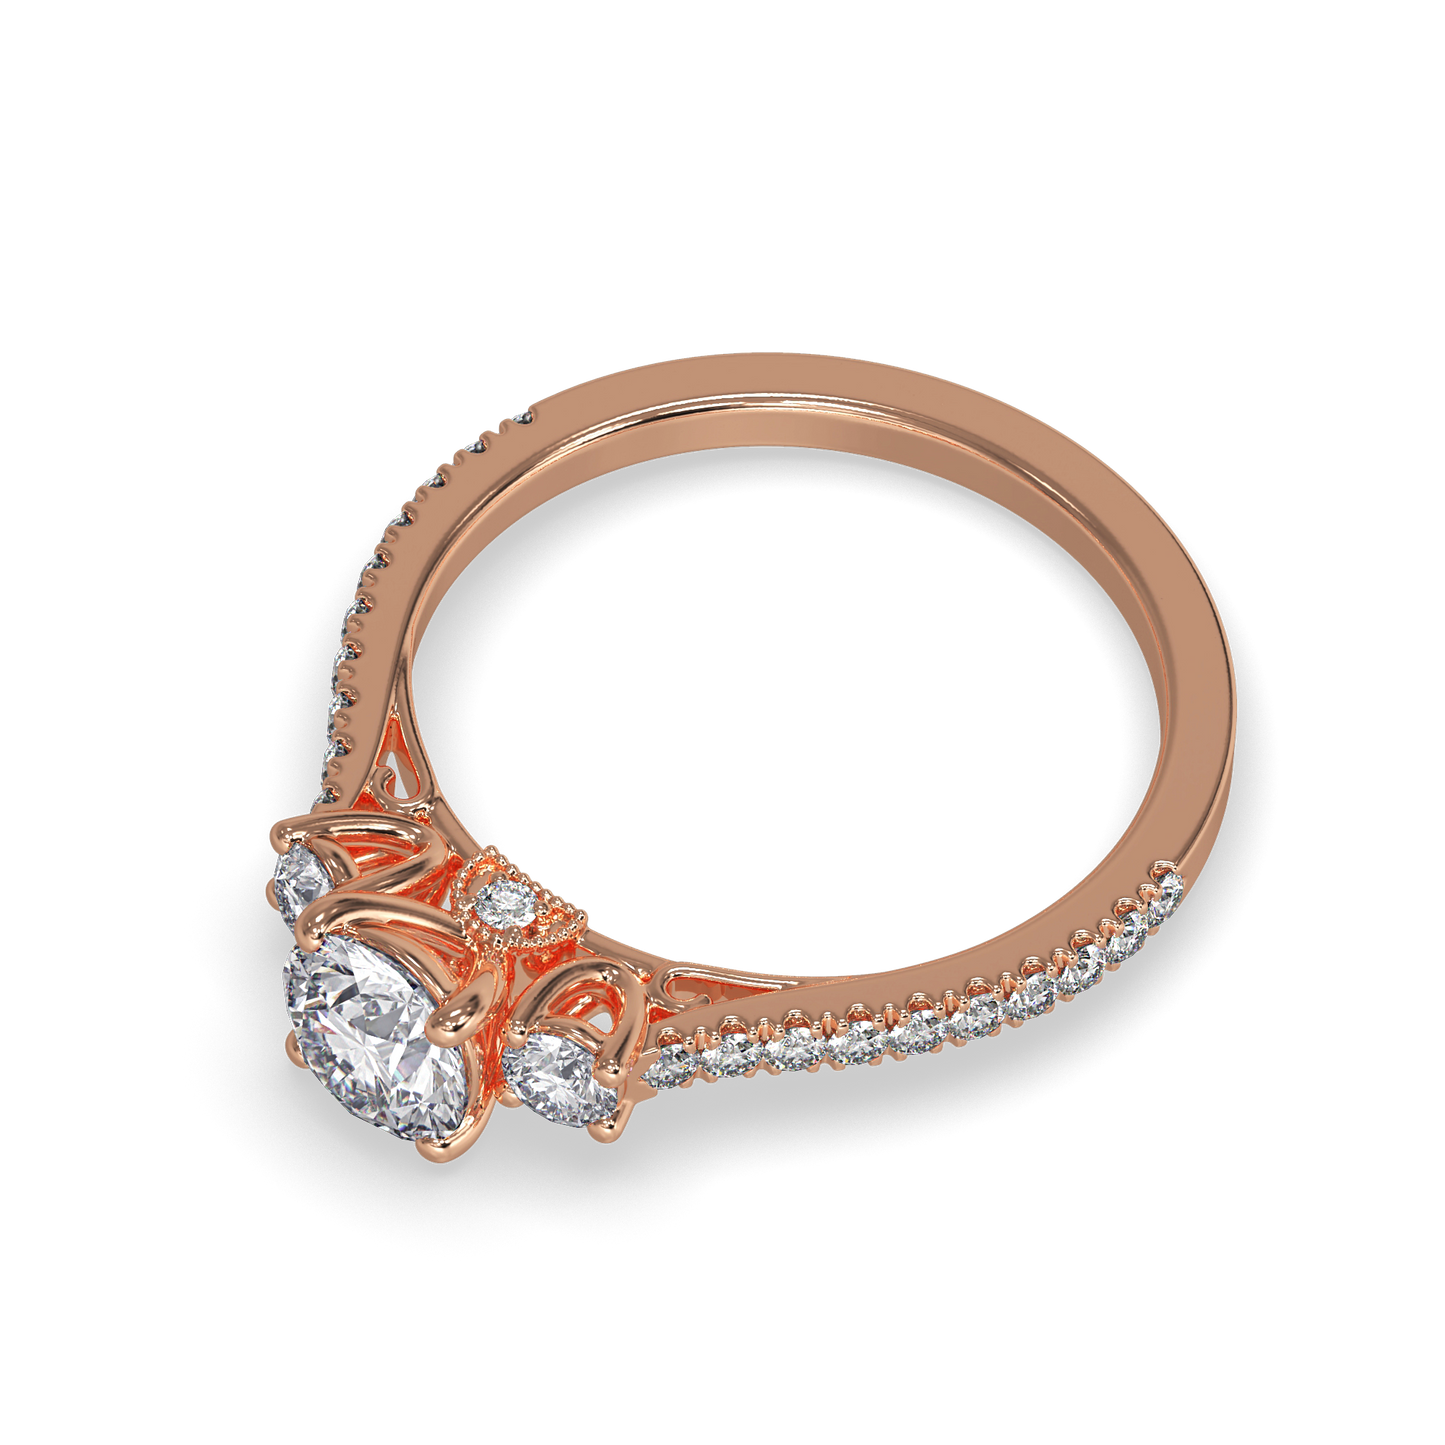 Scarlett Vintage Inspired Three- Stone Round Engagement Ring - ALLMYERA